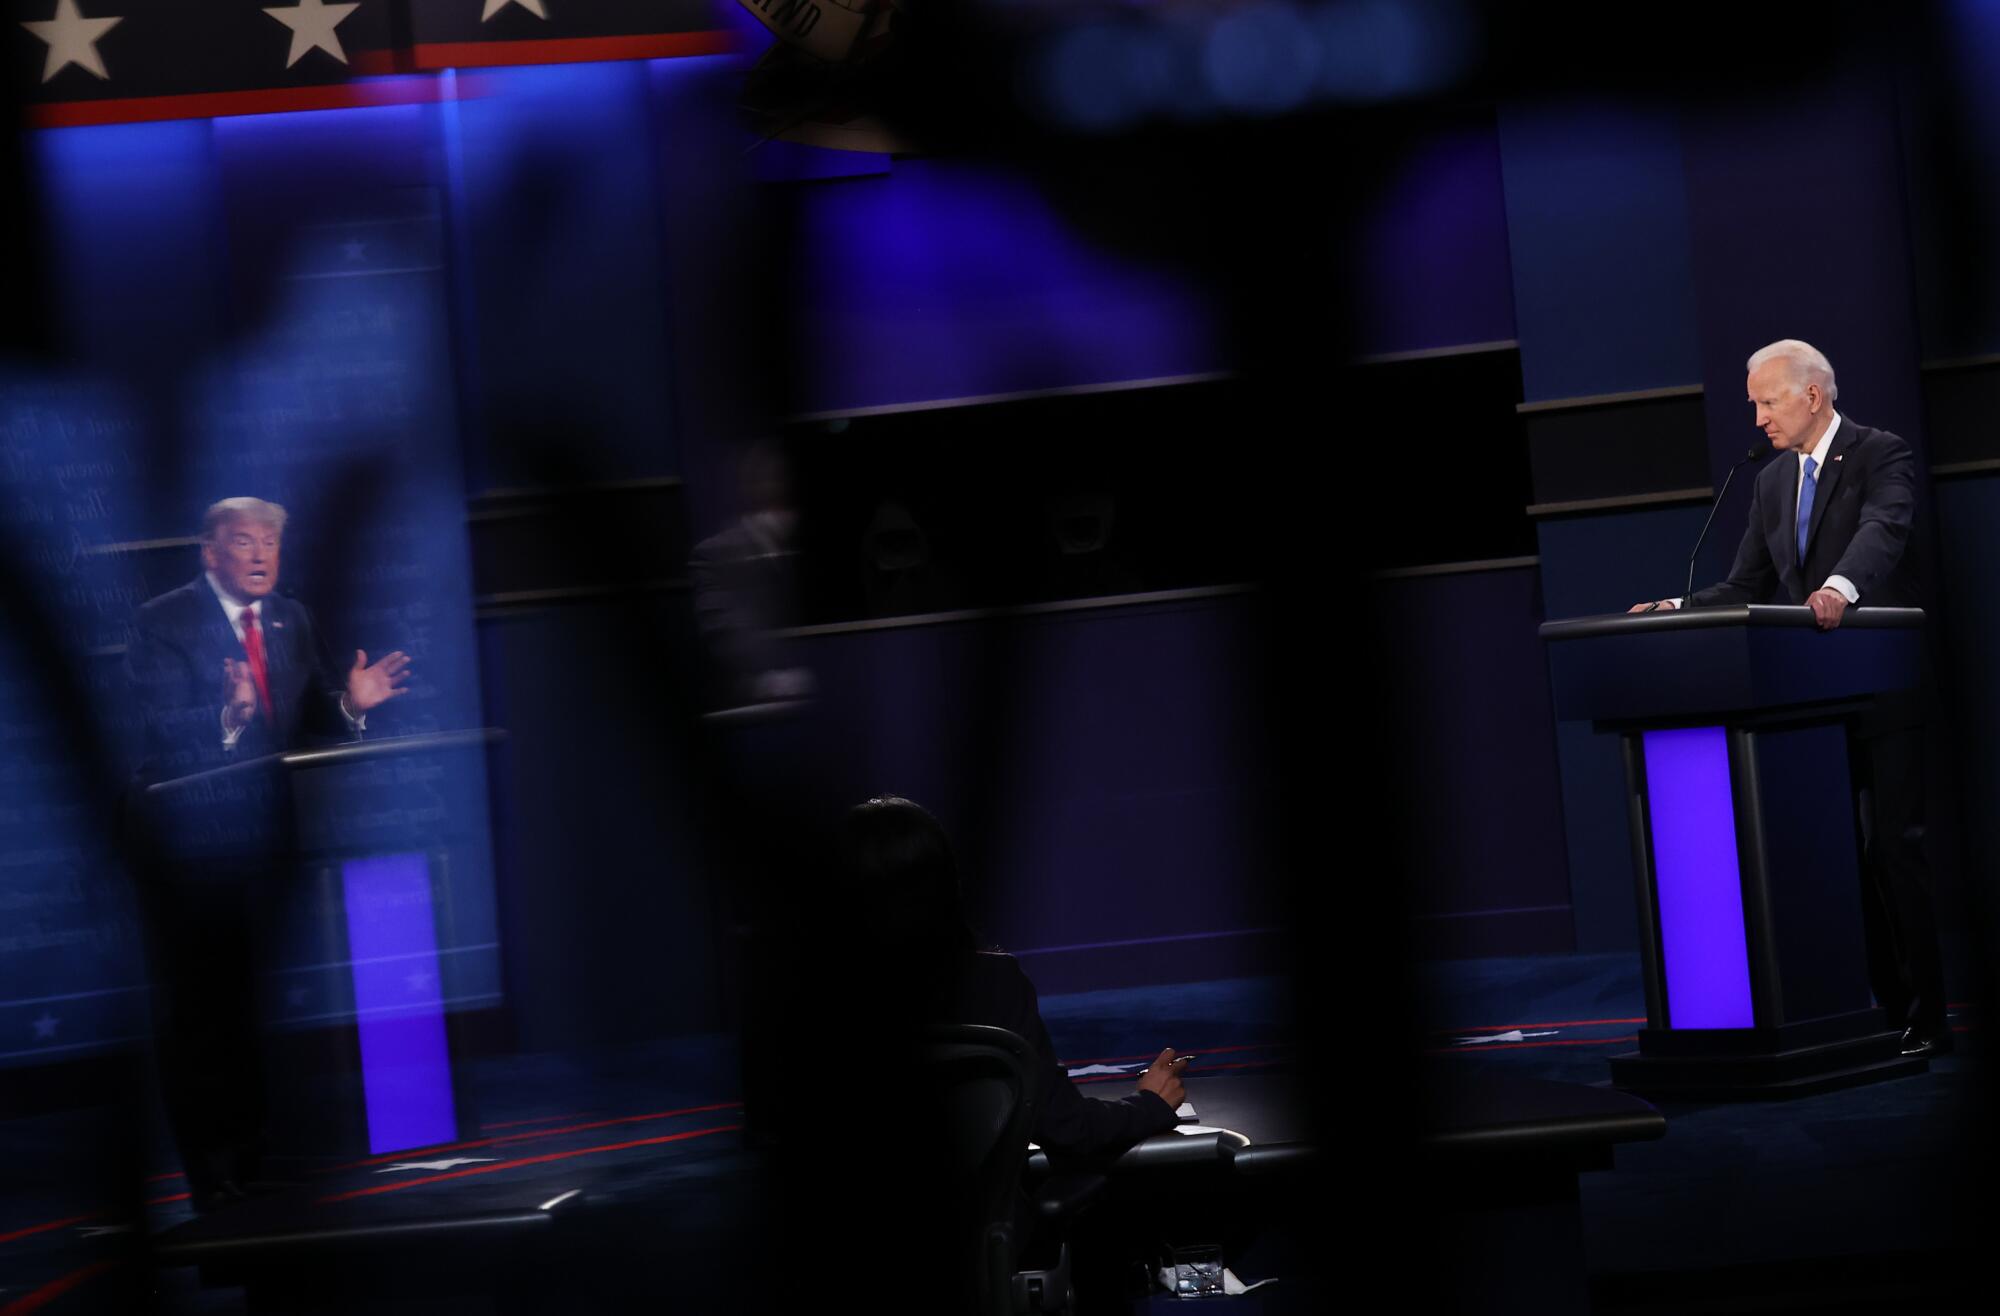 President Trump and Joe Biden seen onstage at the debate